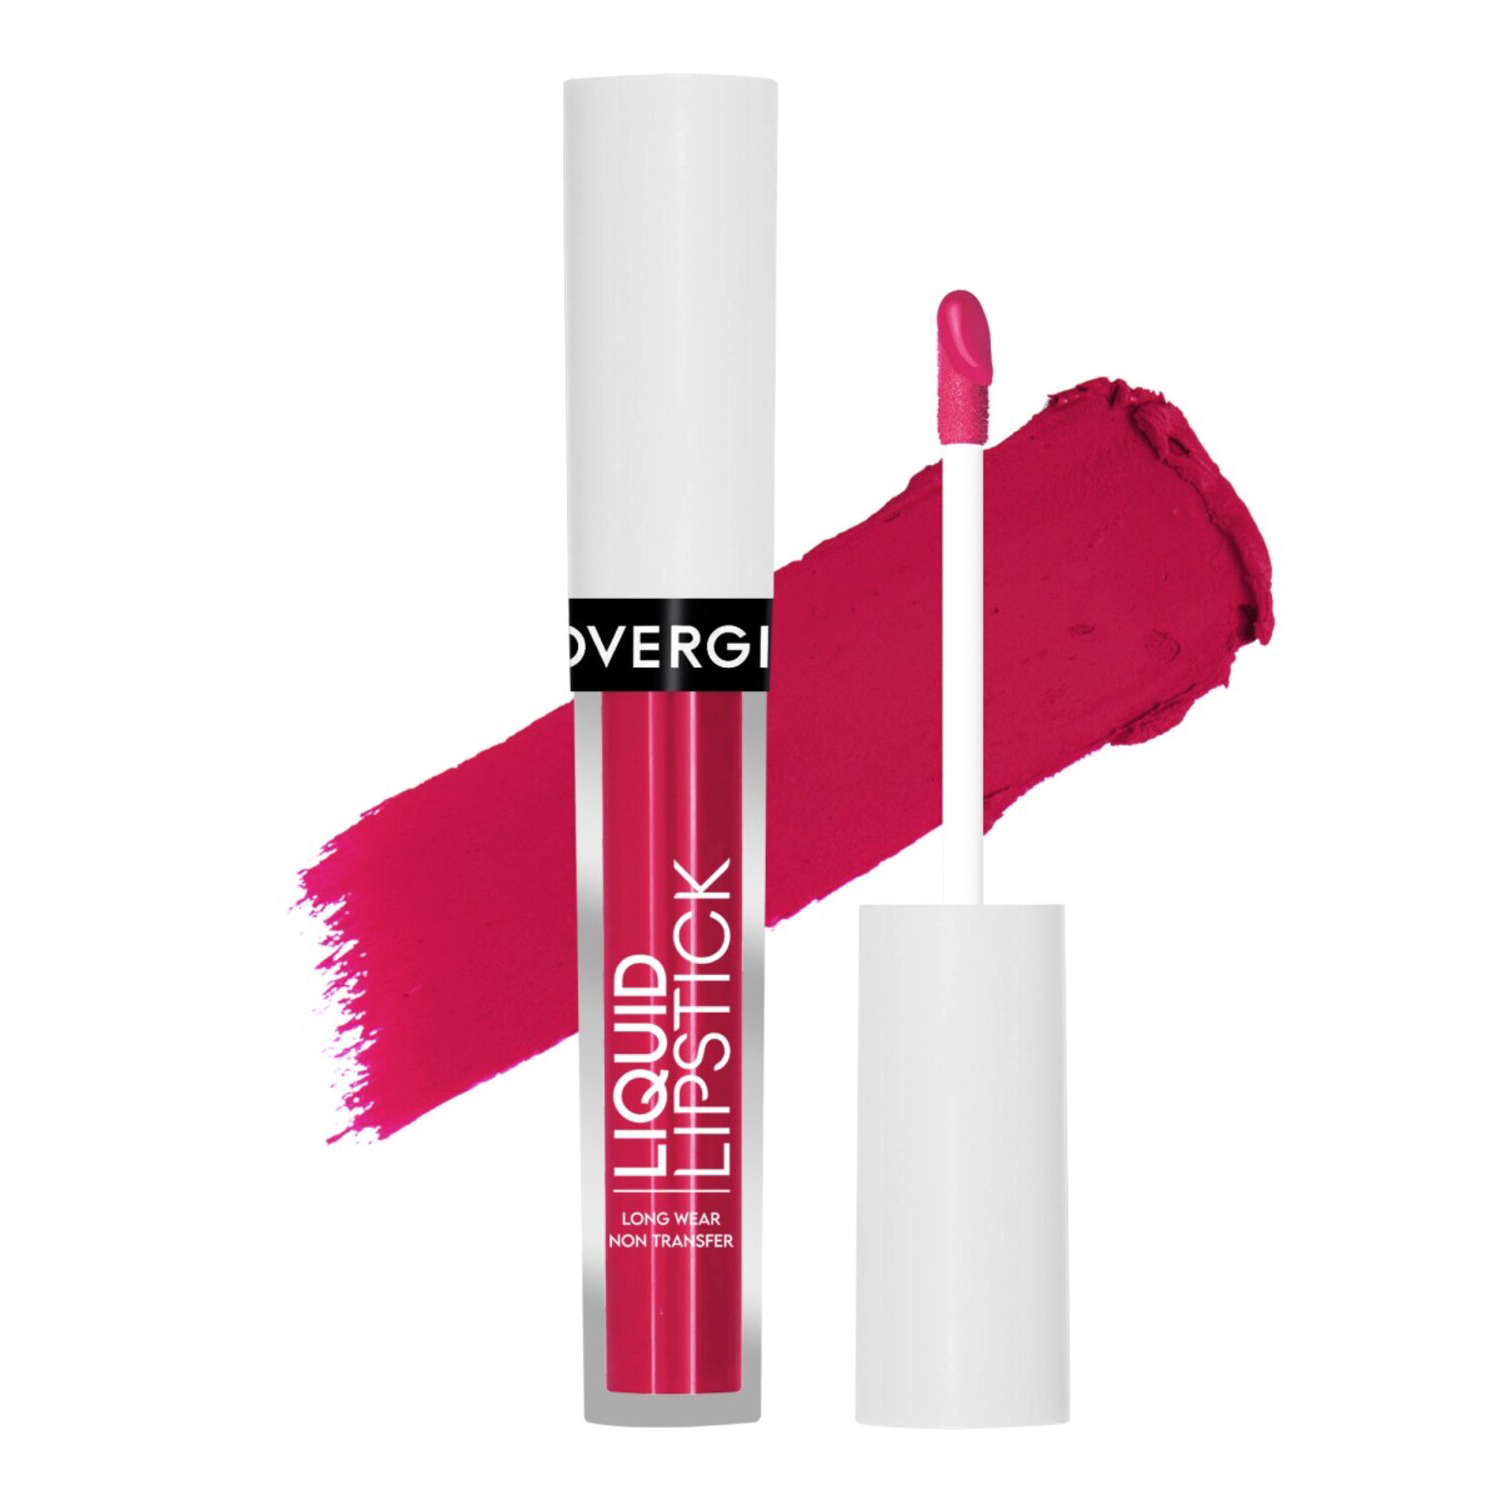 Covergirl Non Transfer Liquid Lipstick, 4ml-Non Transfer Liquid Lipstick - Shade 14